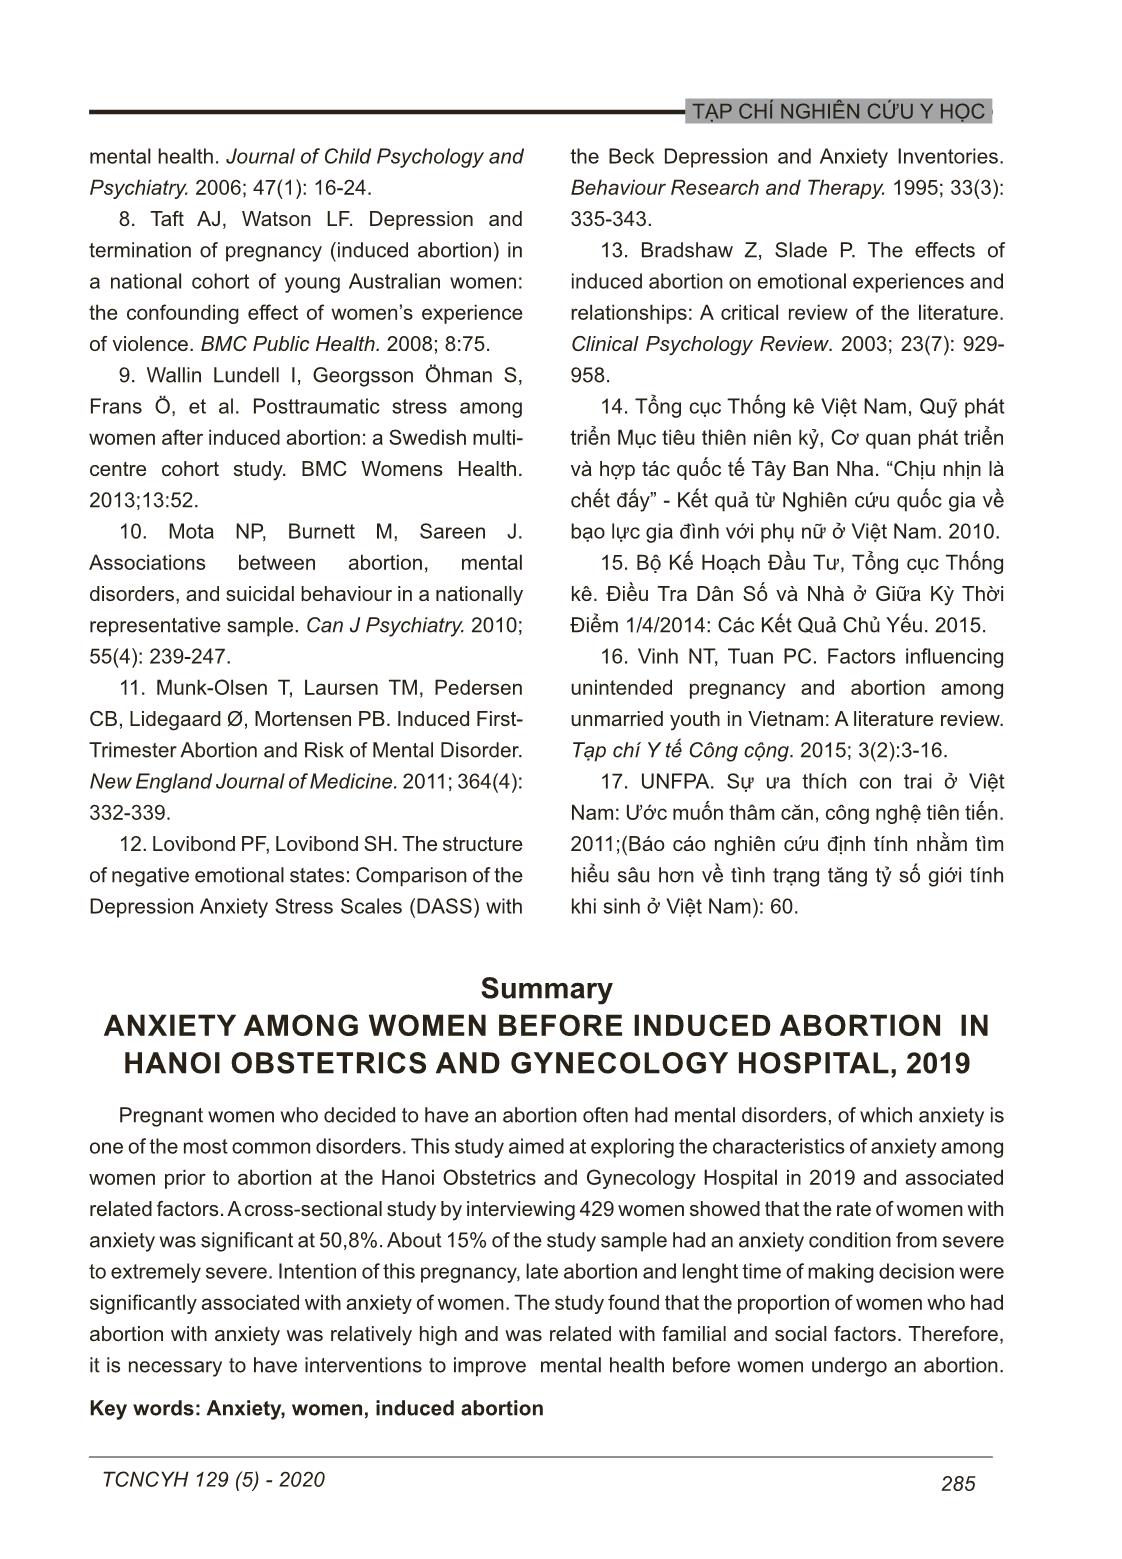 Lo âu ở nhóm phụ nữ đến phá thai tại bệnh viện phụ sản Hà Nội năm 2019 trang 9